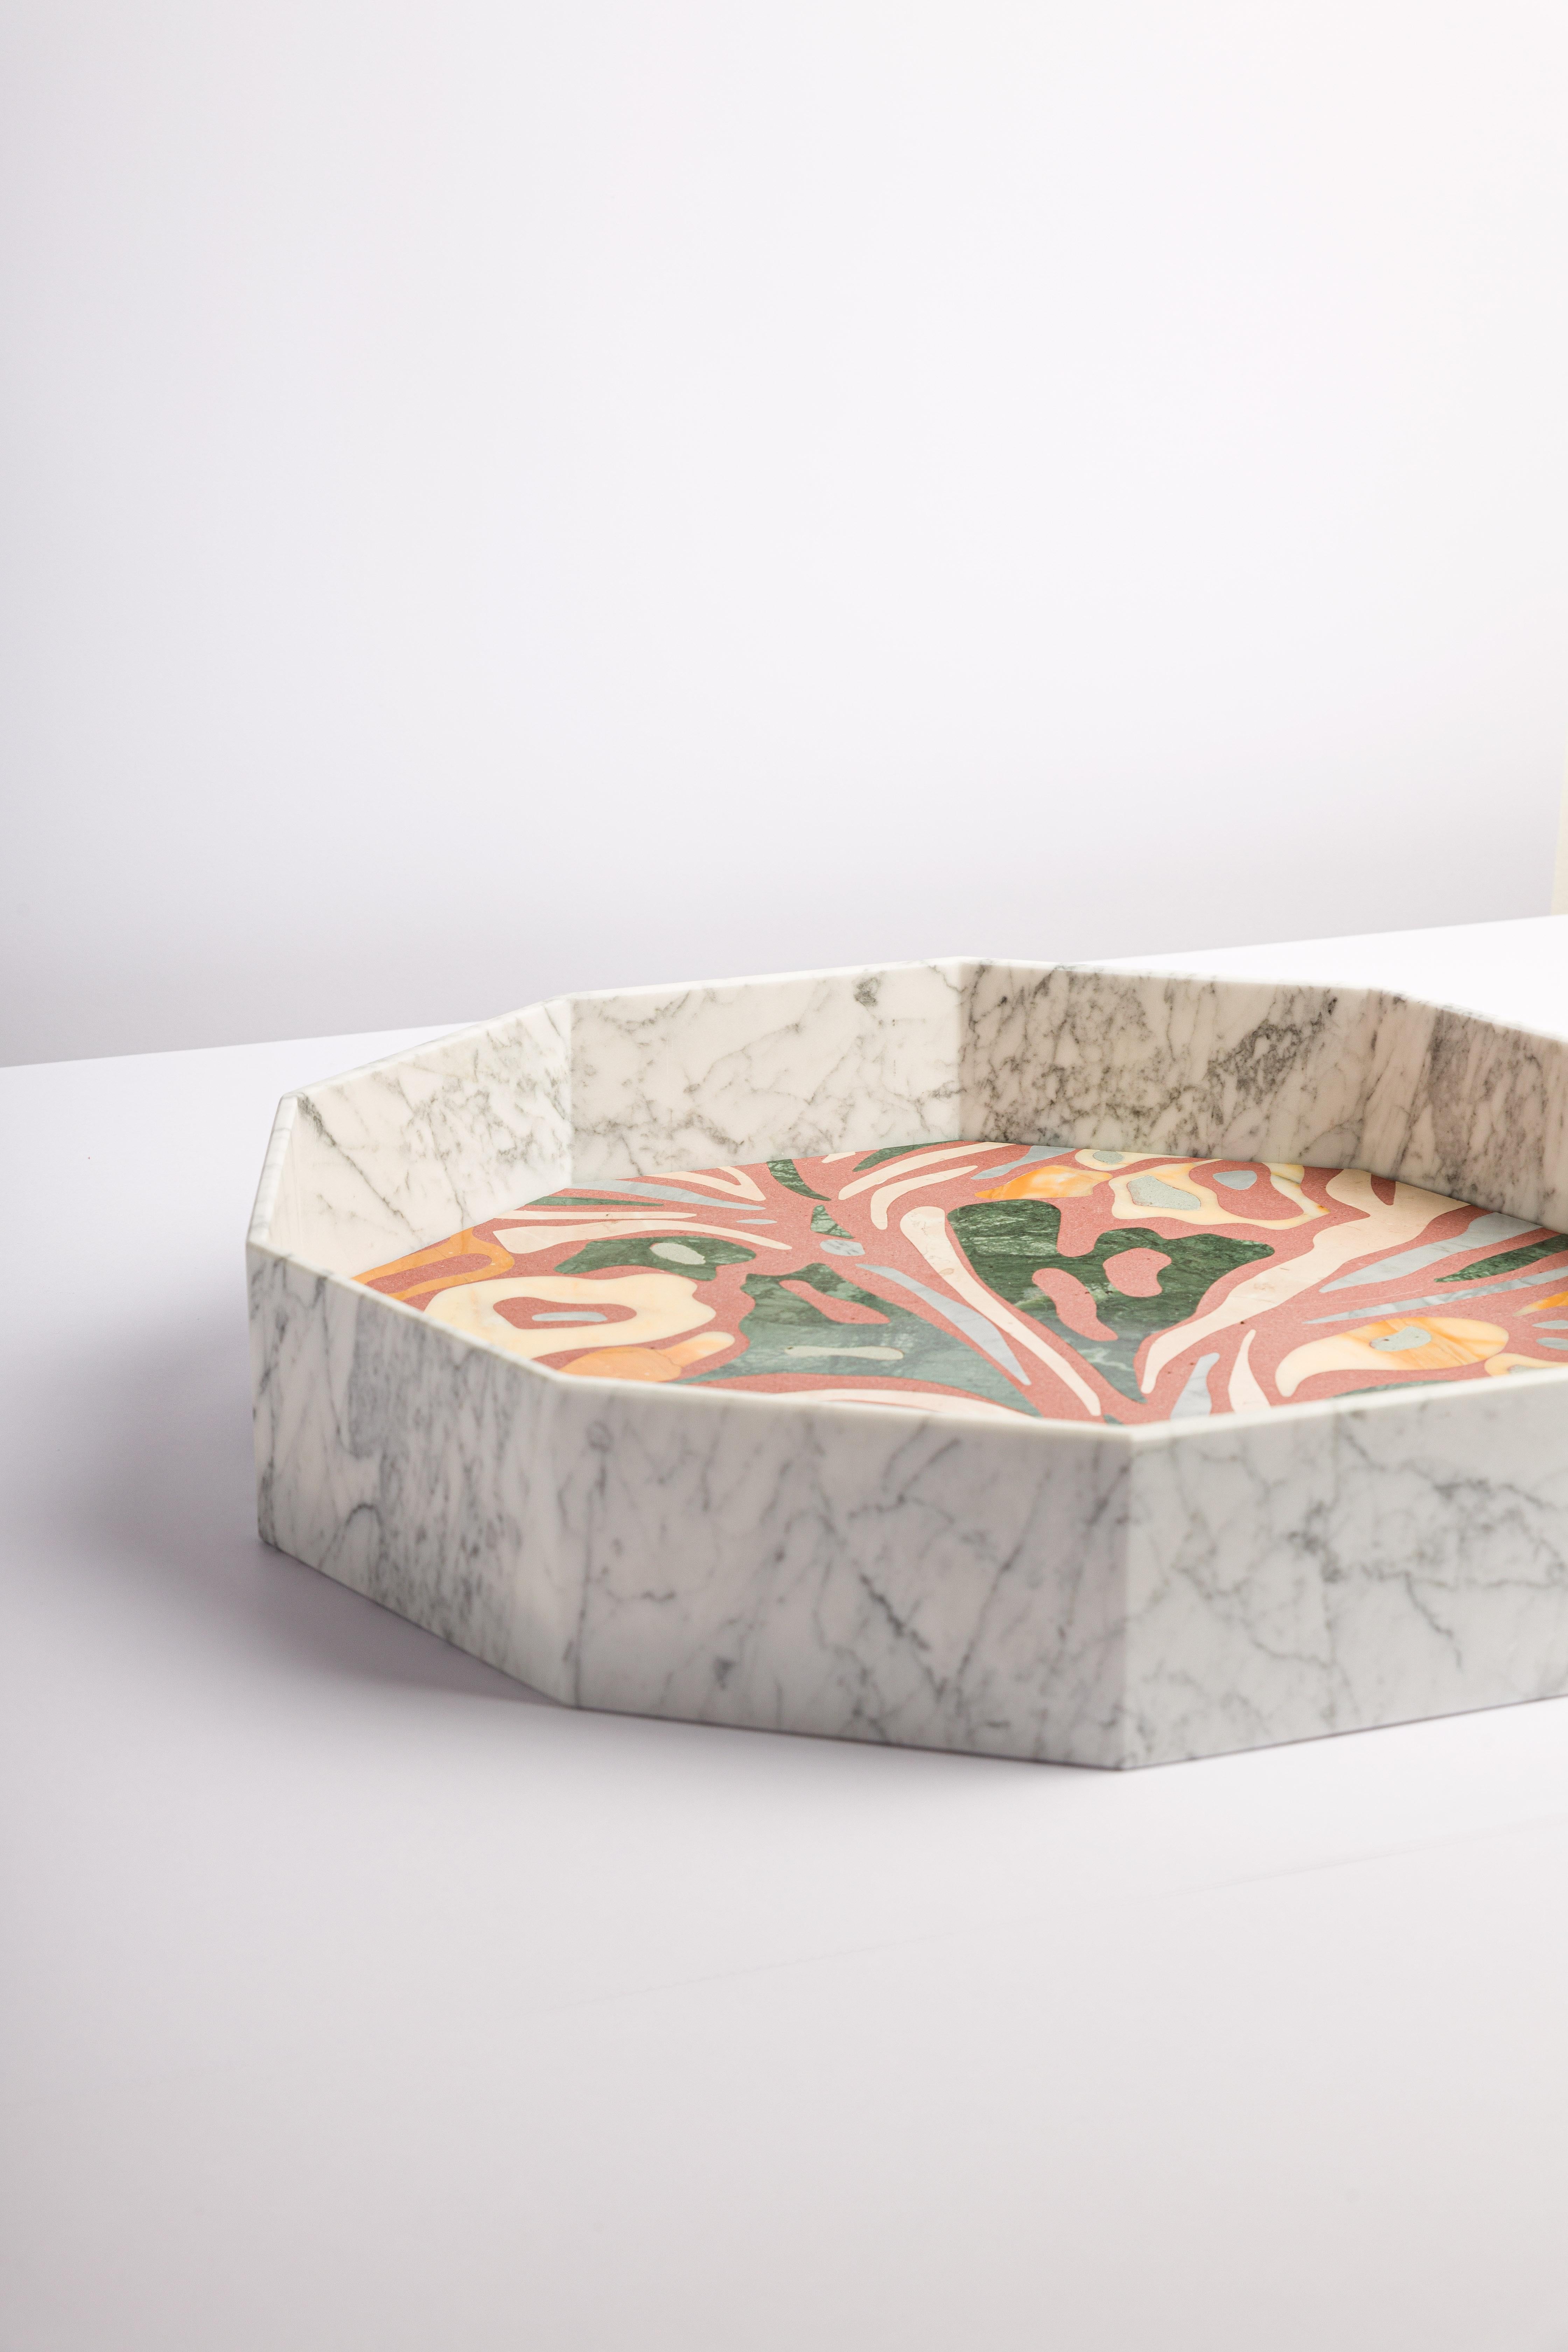 Italian Moderno Vaso / Vassoio in marmo  Bianco Carrara e resina cemento  For Sale